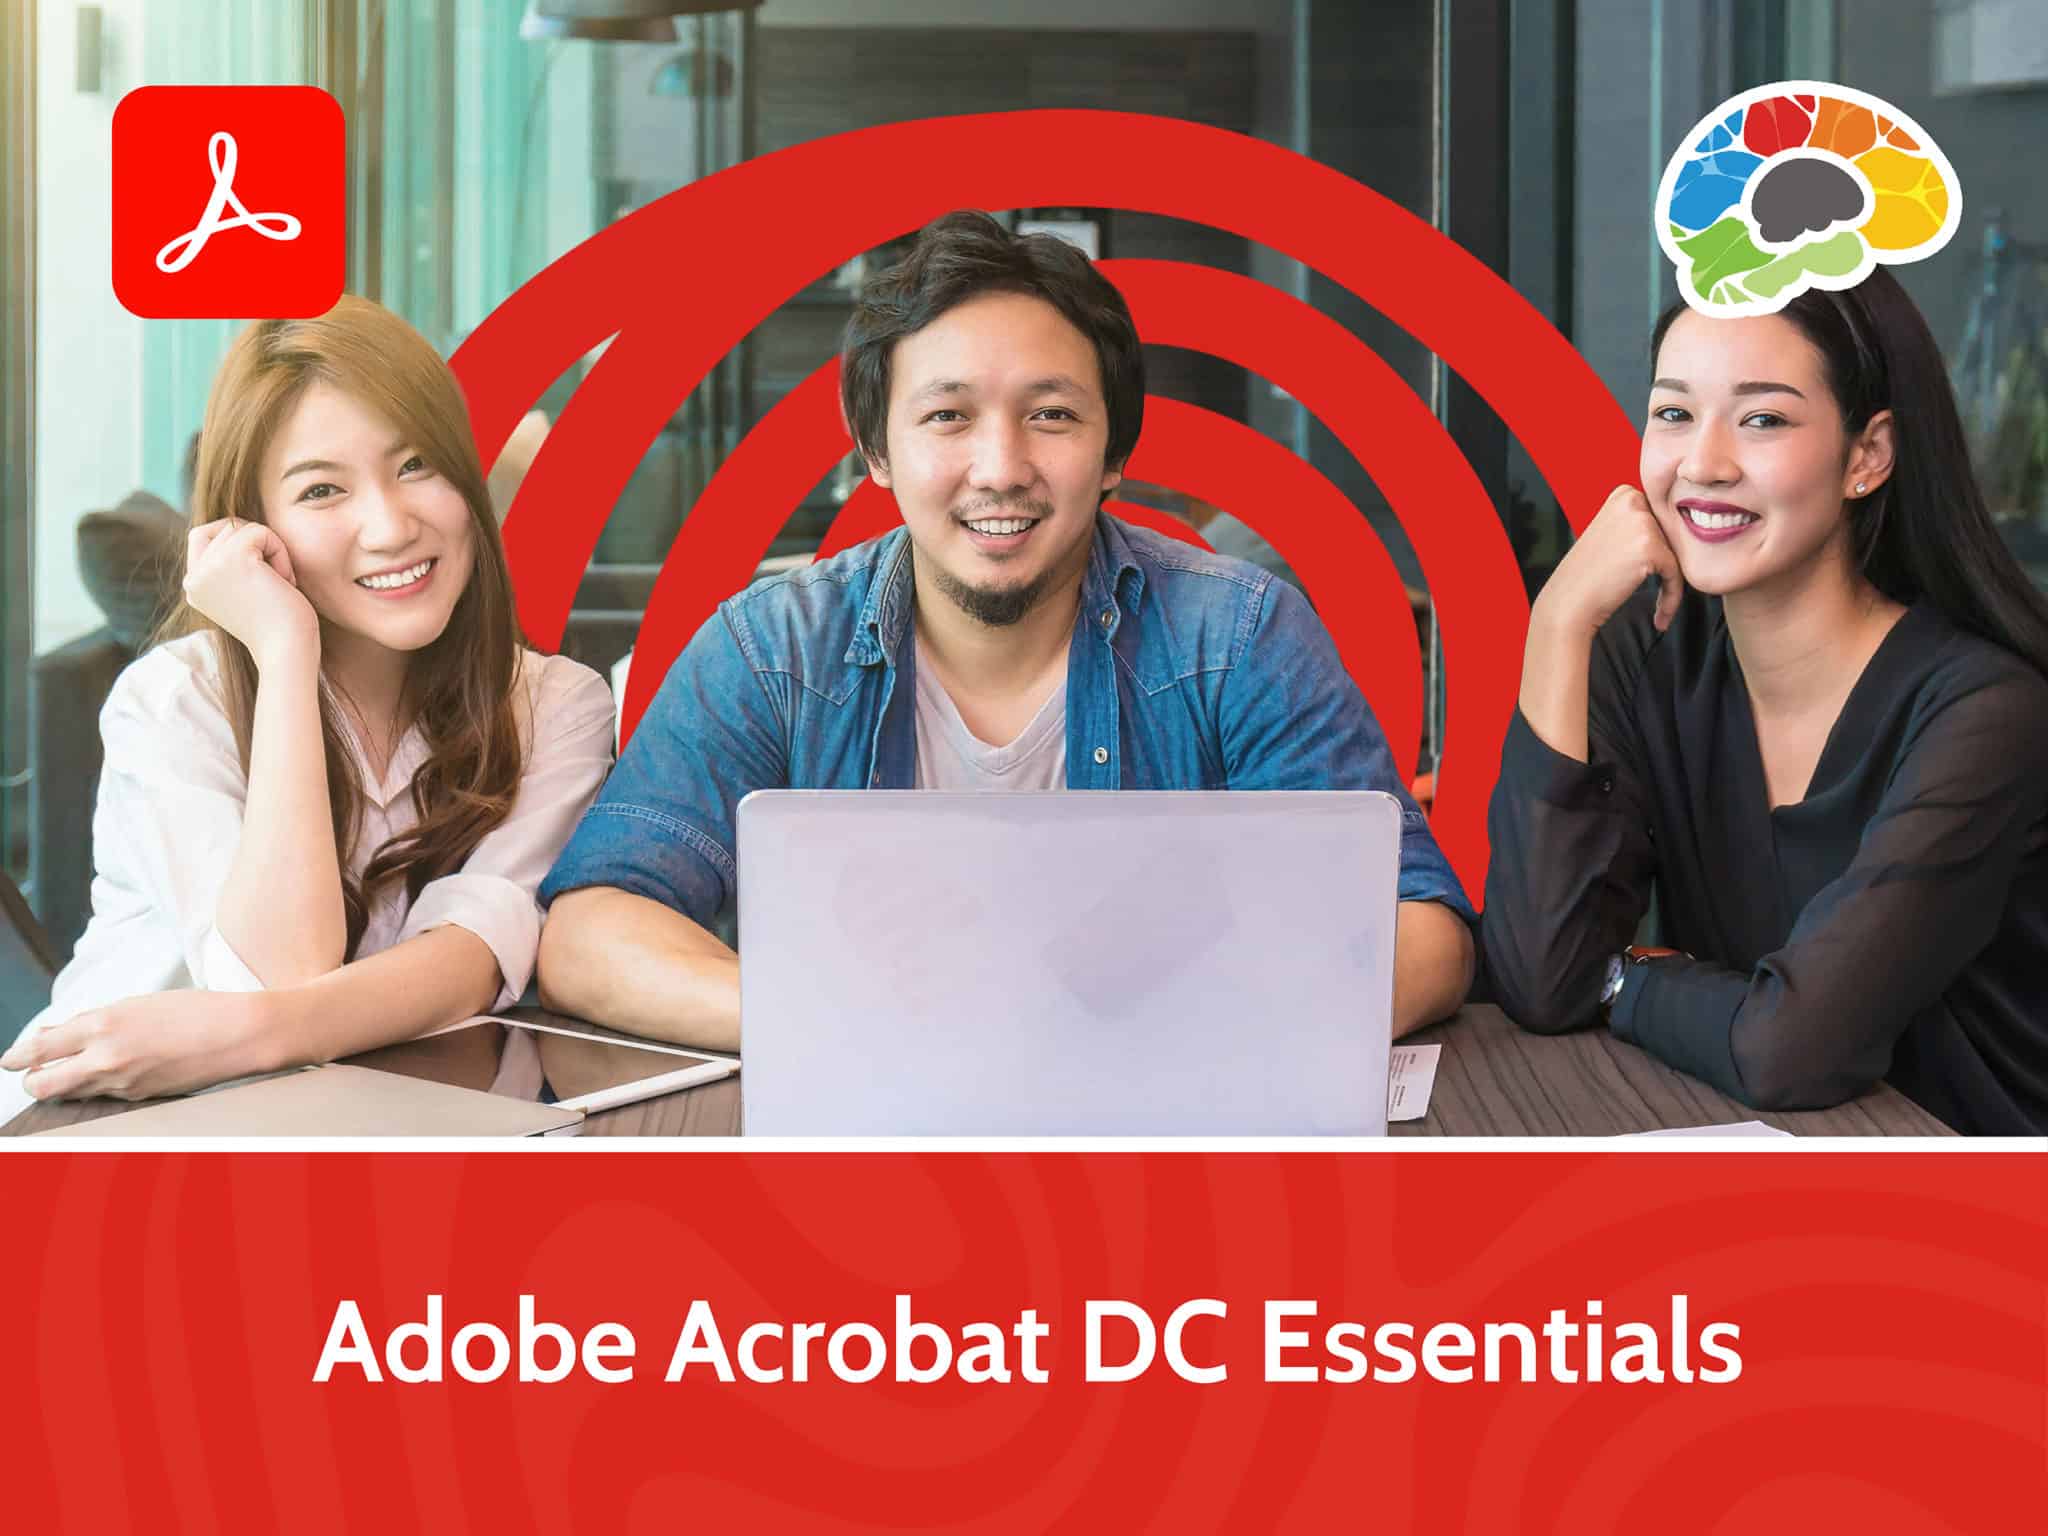 Adobe Acrobat DC Essentials scaled